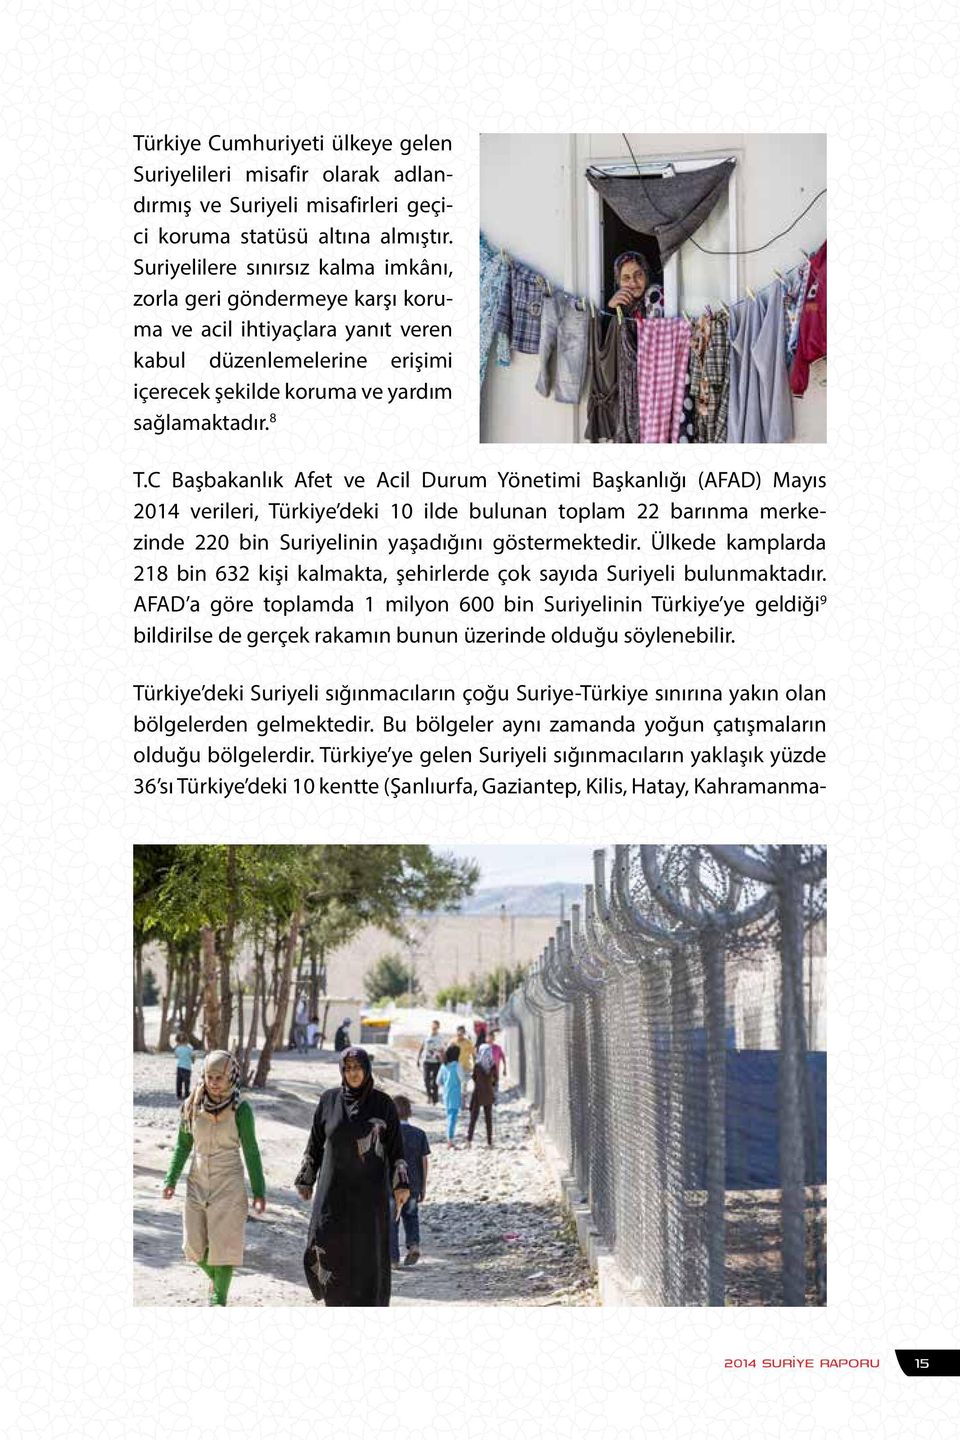 C Başbakanlık Afet ve Acil Durum Yönetimi Başkanlığı (AFAD) Mayıs 2014 verileri, Türkiye deki 10 ilde bulunan toplam 22 barınma merkezinde 220 bin Suriyelinin yaşadığını göstermektedir.